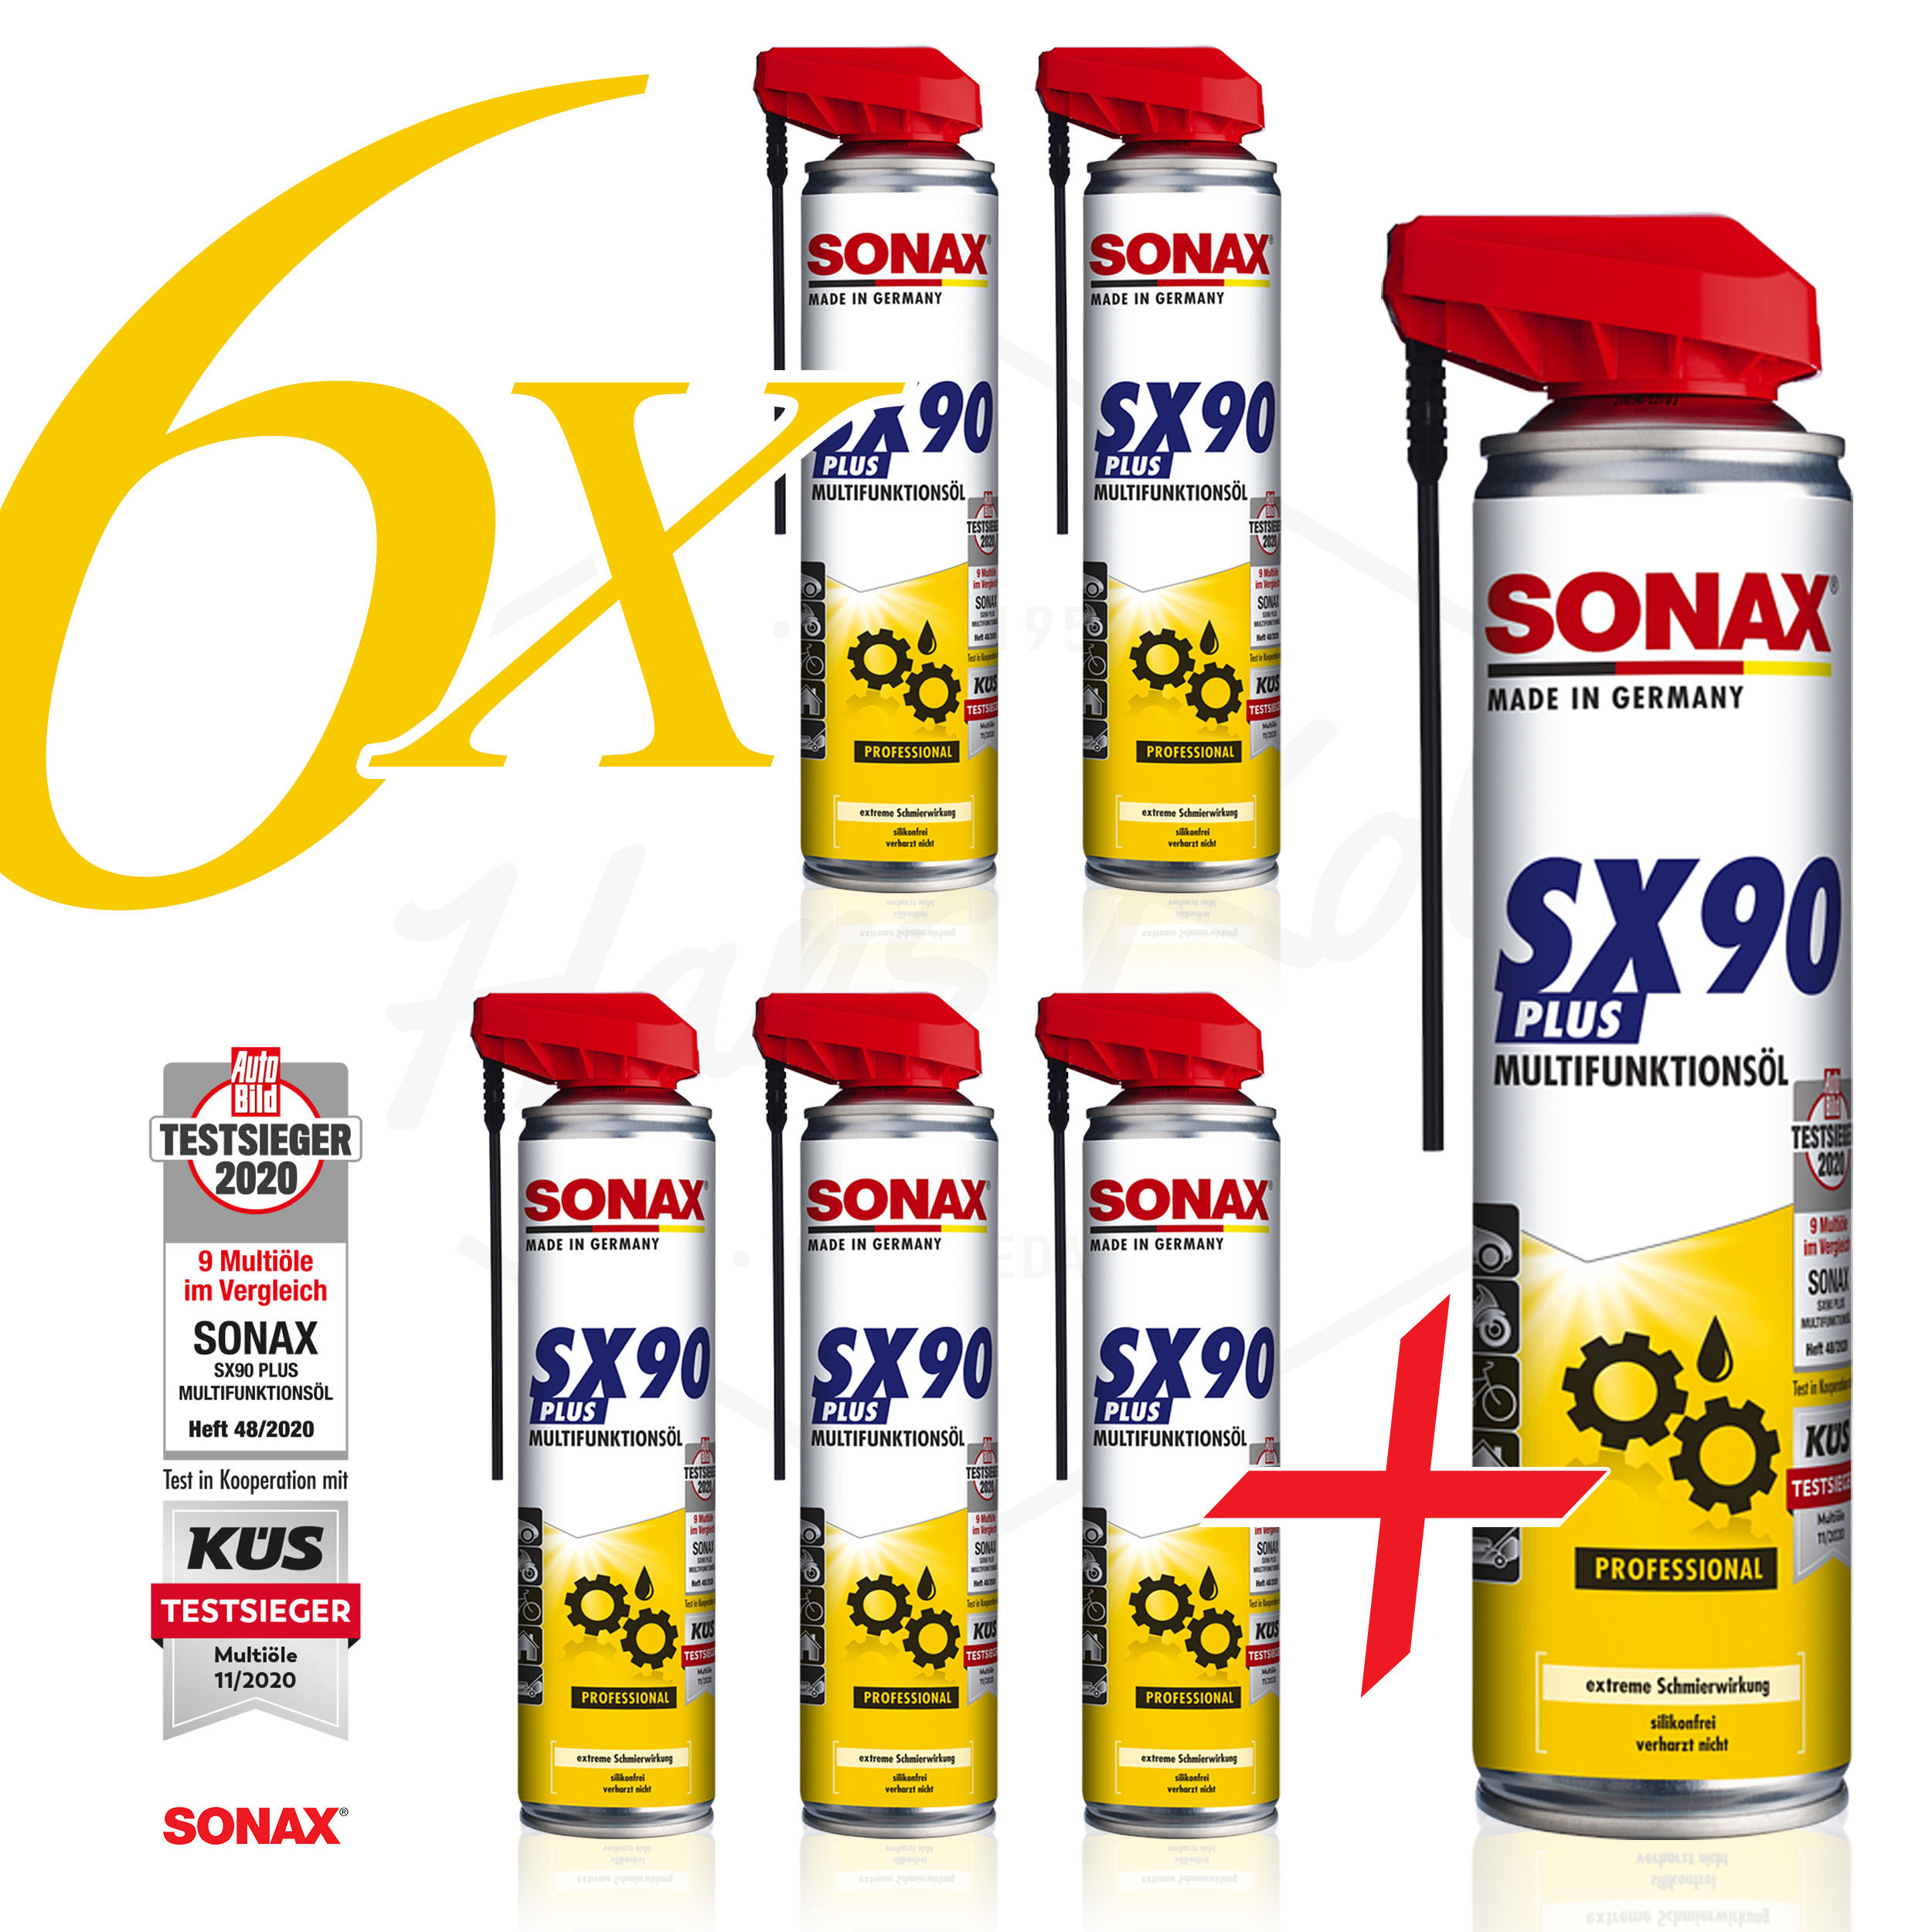 https://valo.de/media/image/06/3f/b1/Sonax-5-plus-1-Multifunktionsspray-001-Ebay.jpg